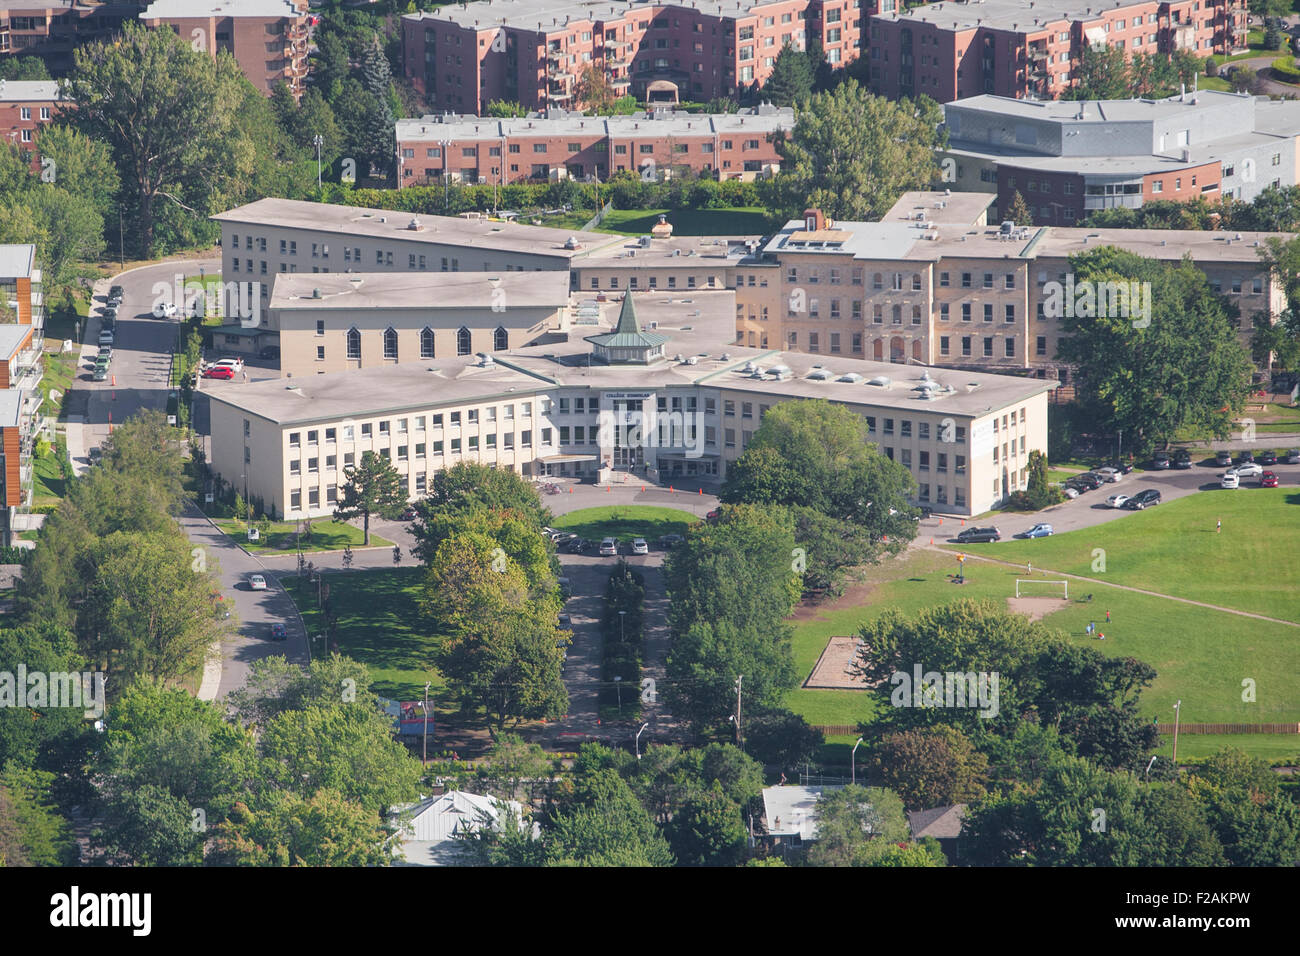 College Stanislas scuola è illustrata in questa foto aerea nella città di Québec Foto Stock